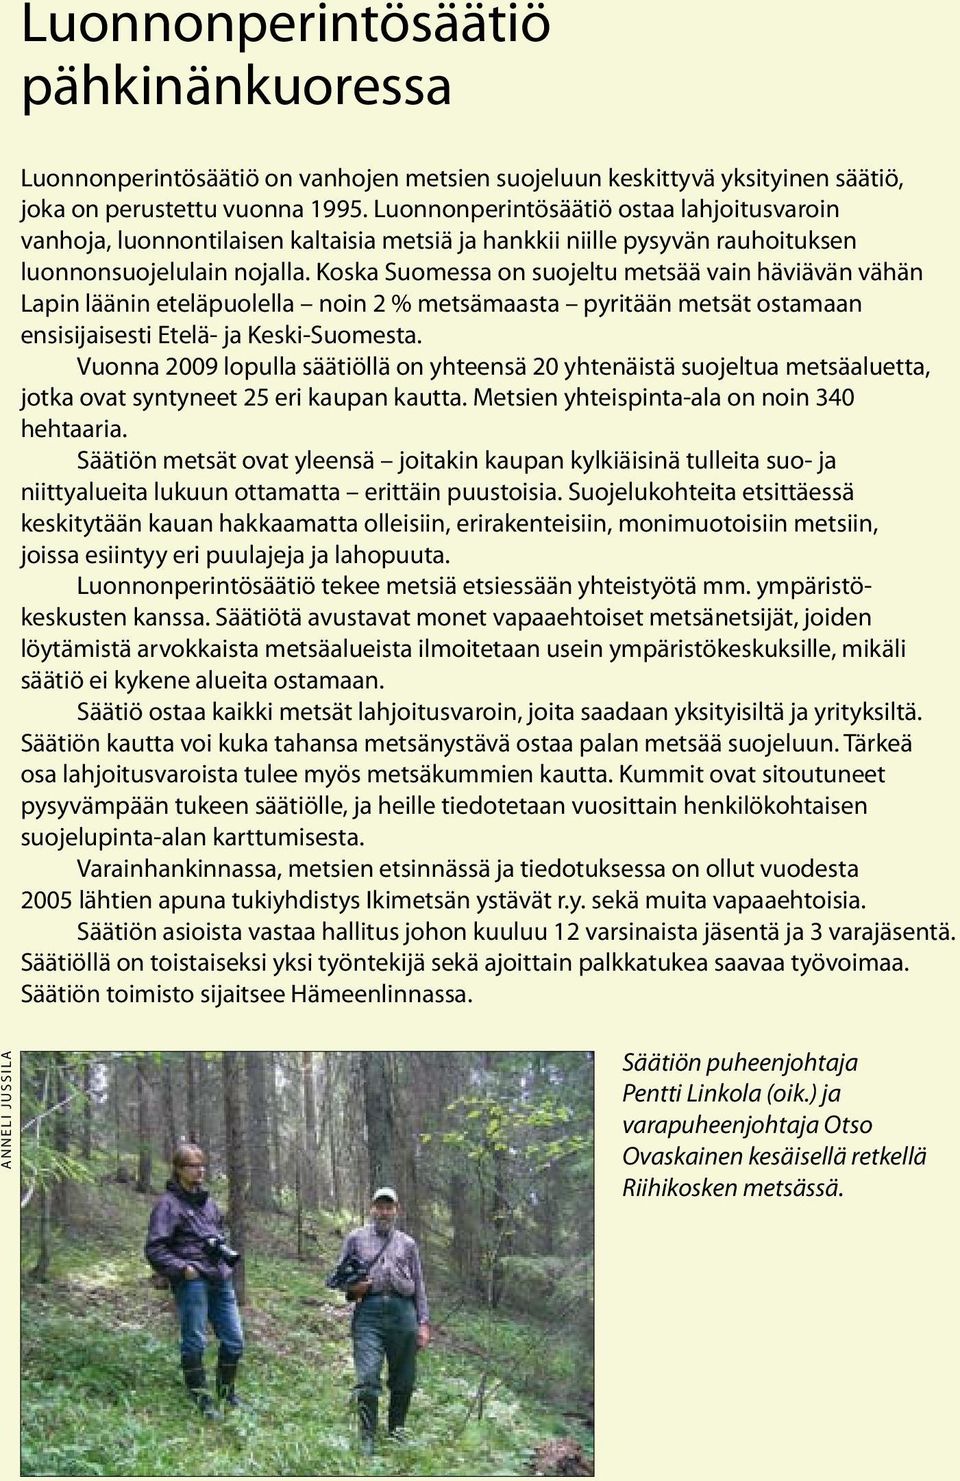 Koska Suomessa on suojeltu metsää vain häviävän vähän Lapin läänin eteläpuolella noin 2 % metsämaasta pyritään metsät ostamaan ensisijaisesti Etelä- ja Keski-Suomesta.